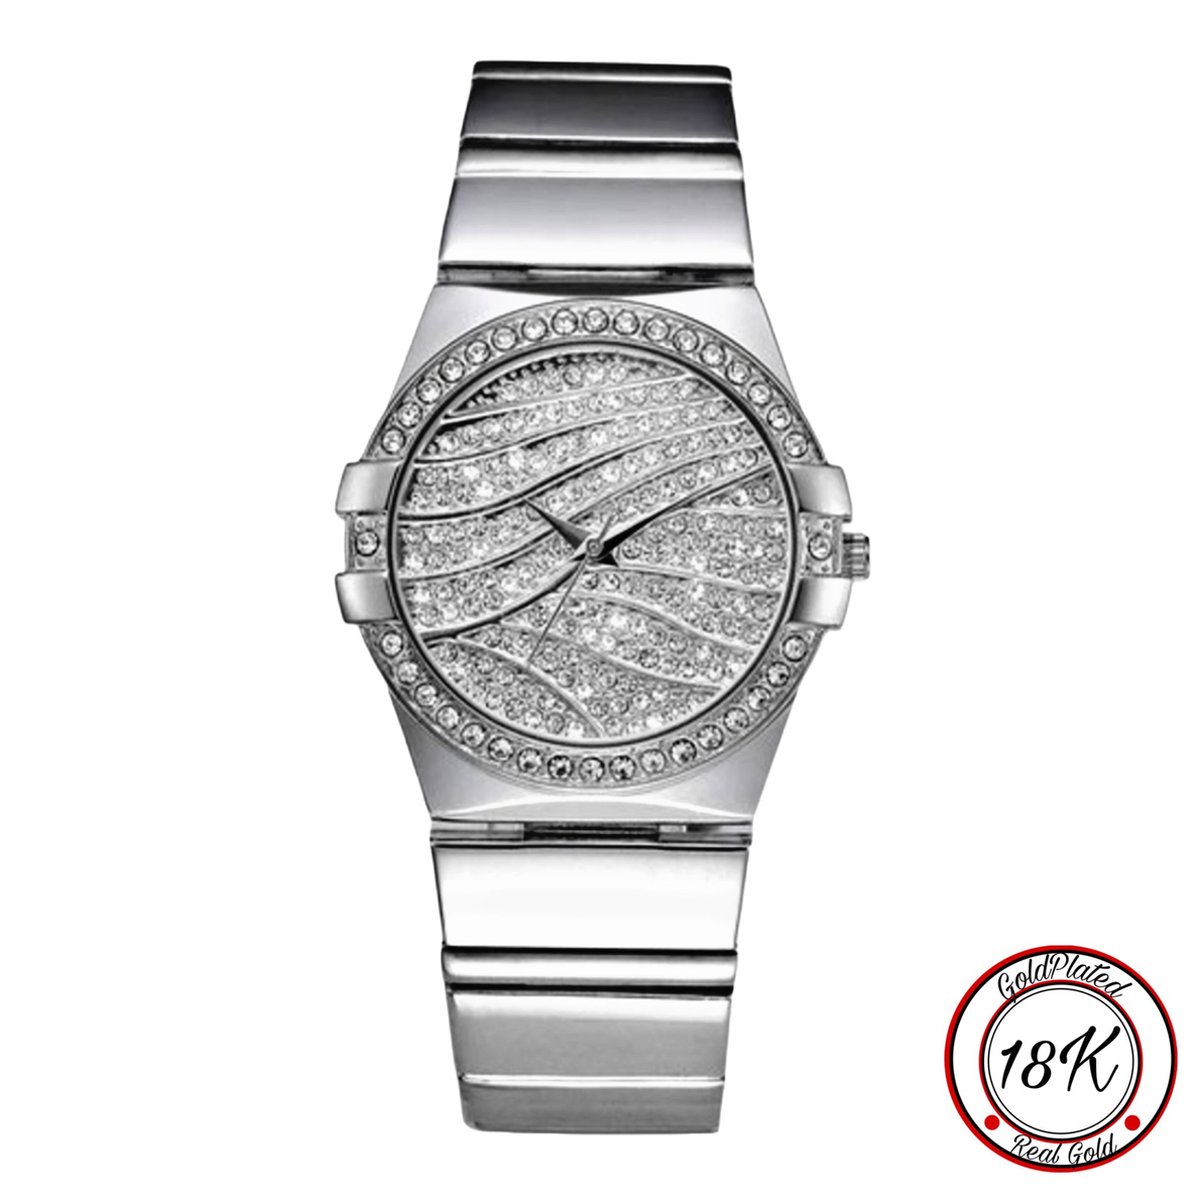 Borasi Full Zirkonia Bling Horloge | 18k Goldplated | Zilver | RVS Stainless Steel | Inclusief Verstelsetje | Water Bestendig | Quartz | Vrouwen Horloge | Horloges Voor Vrouwen | Cadeau Voor Vrouwen